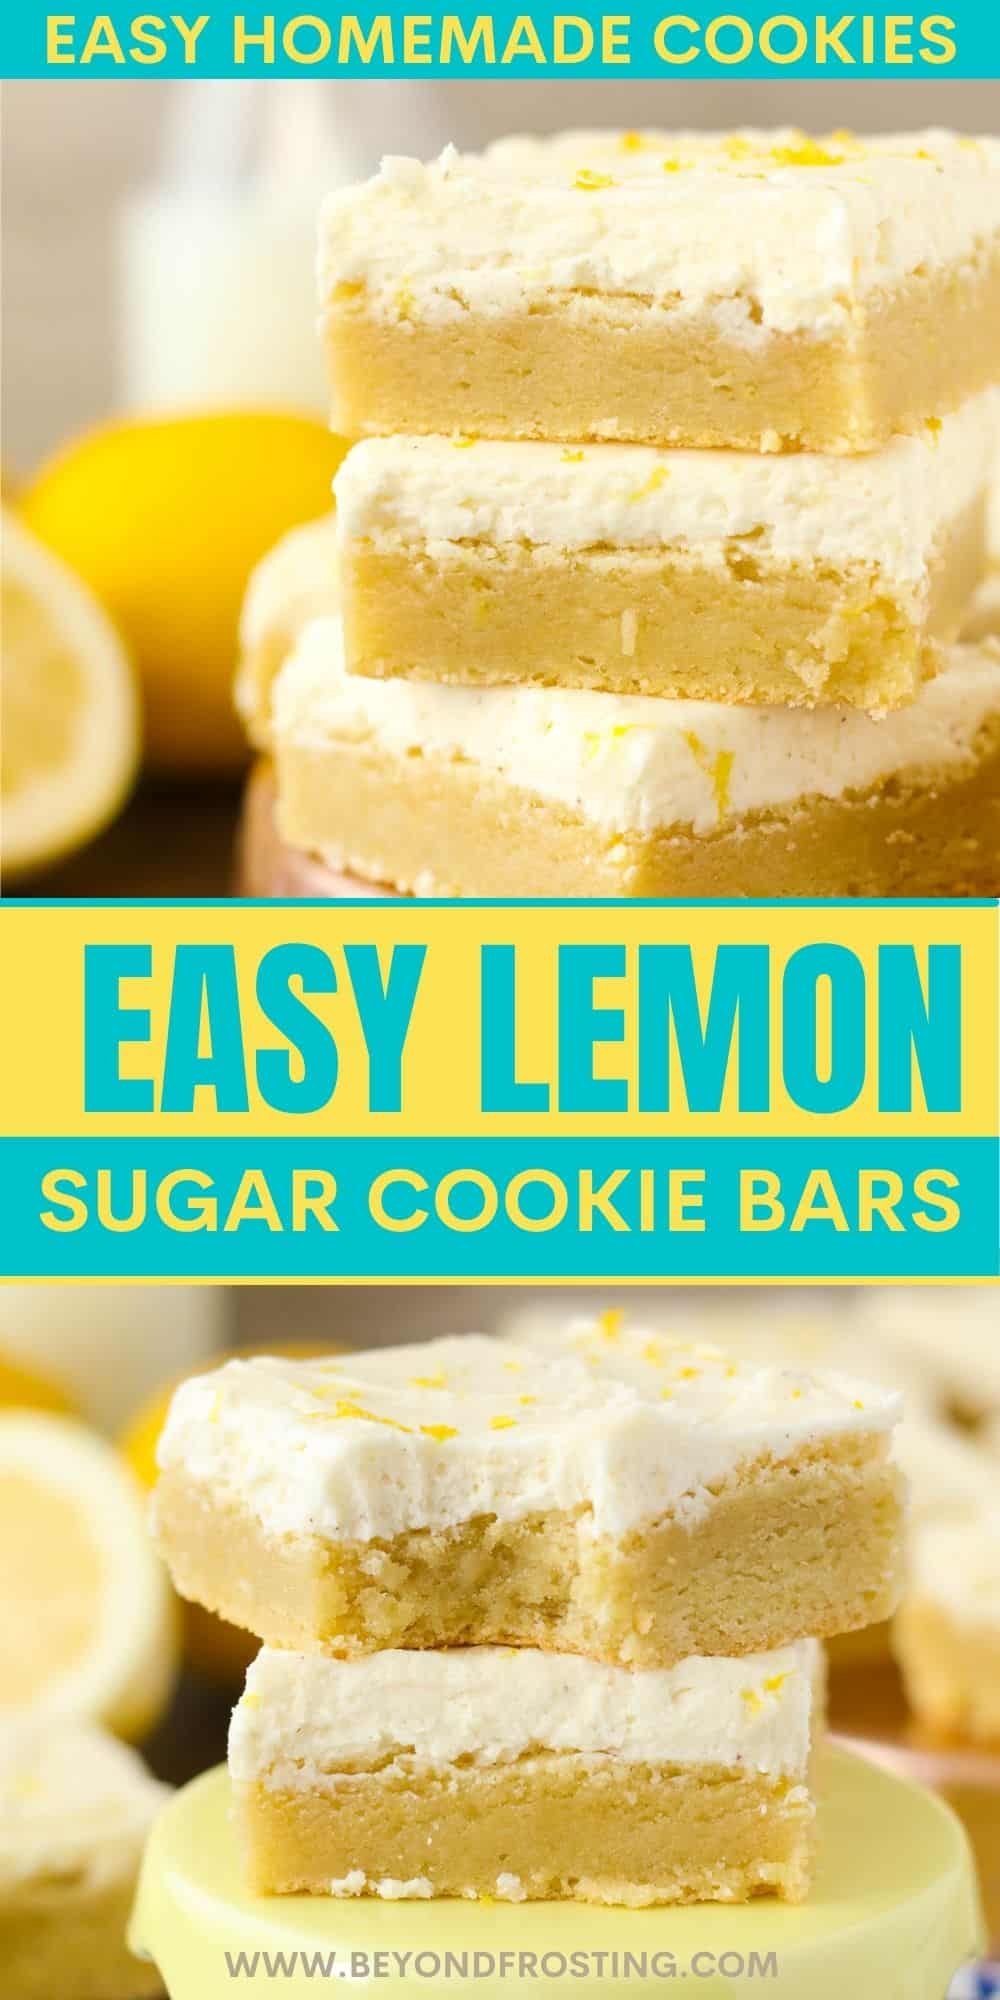 Easy Lemon Sugar Cookie Bars | Beyond Frosting